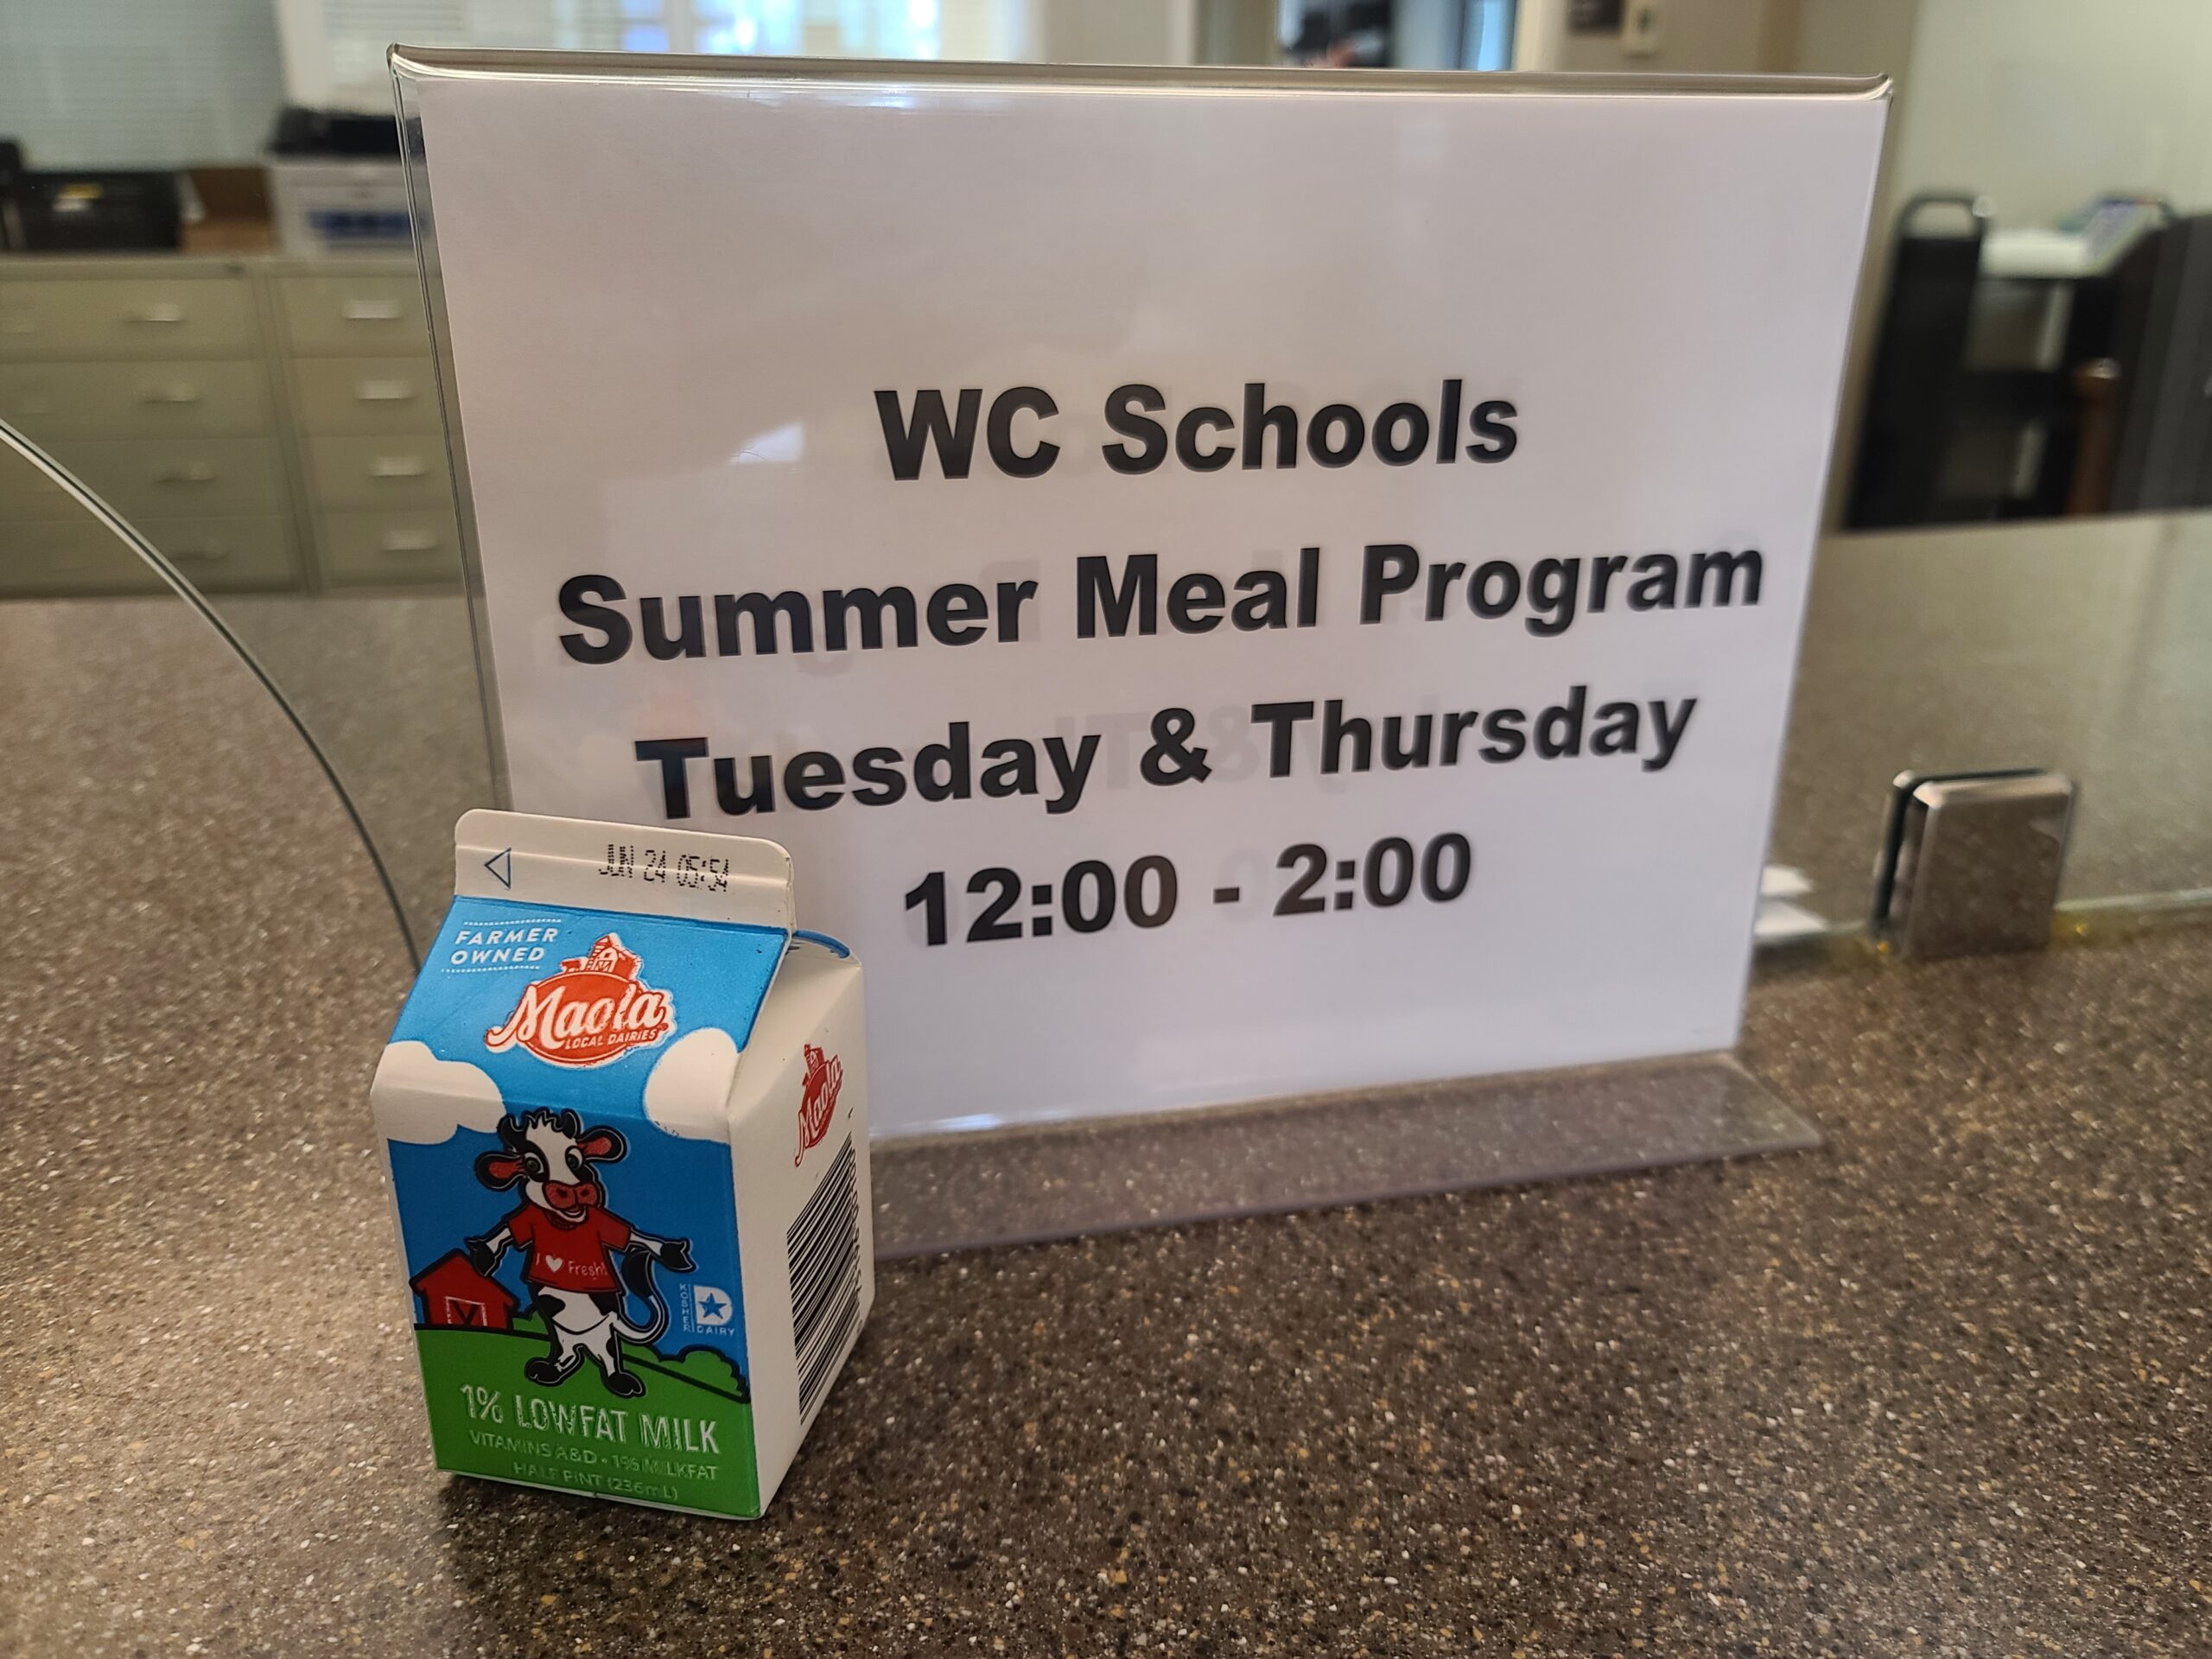 summer meal lunch program warren county memorial library warrenton nc